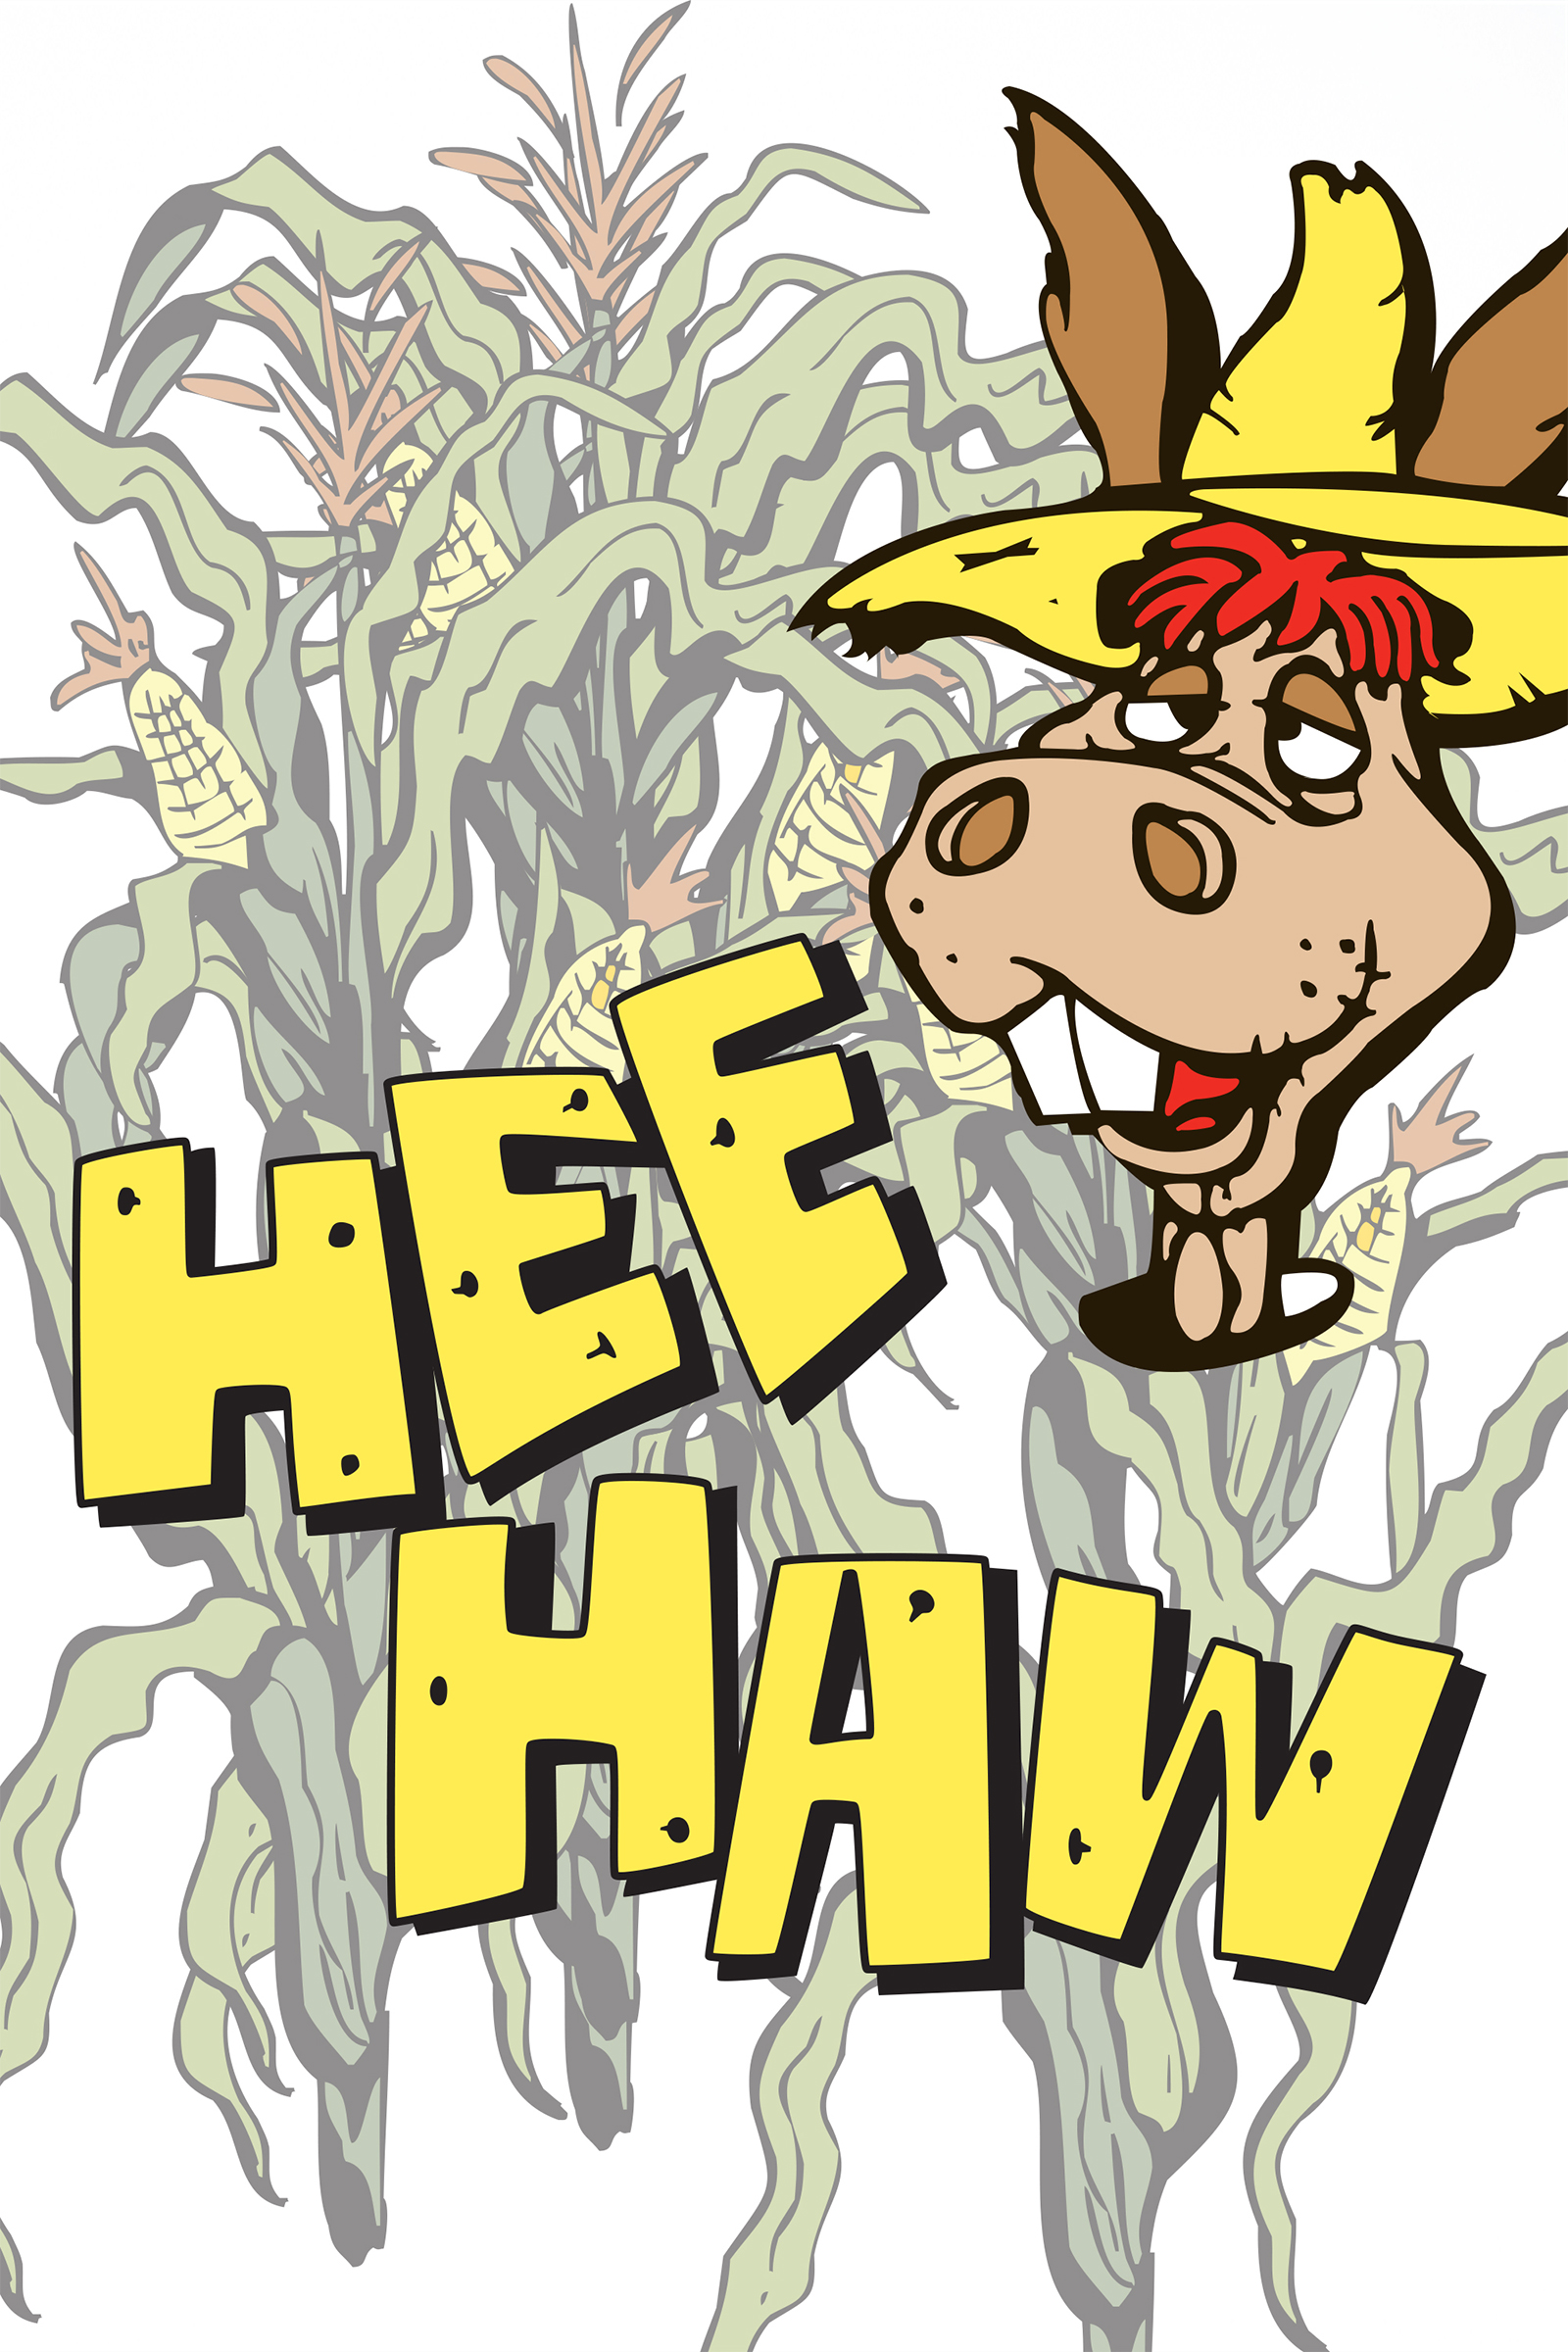 Hee Haw.